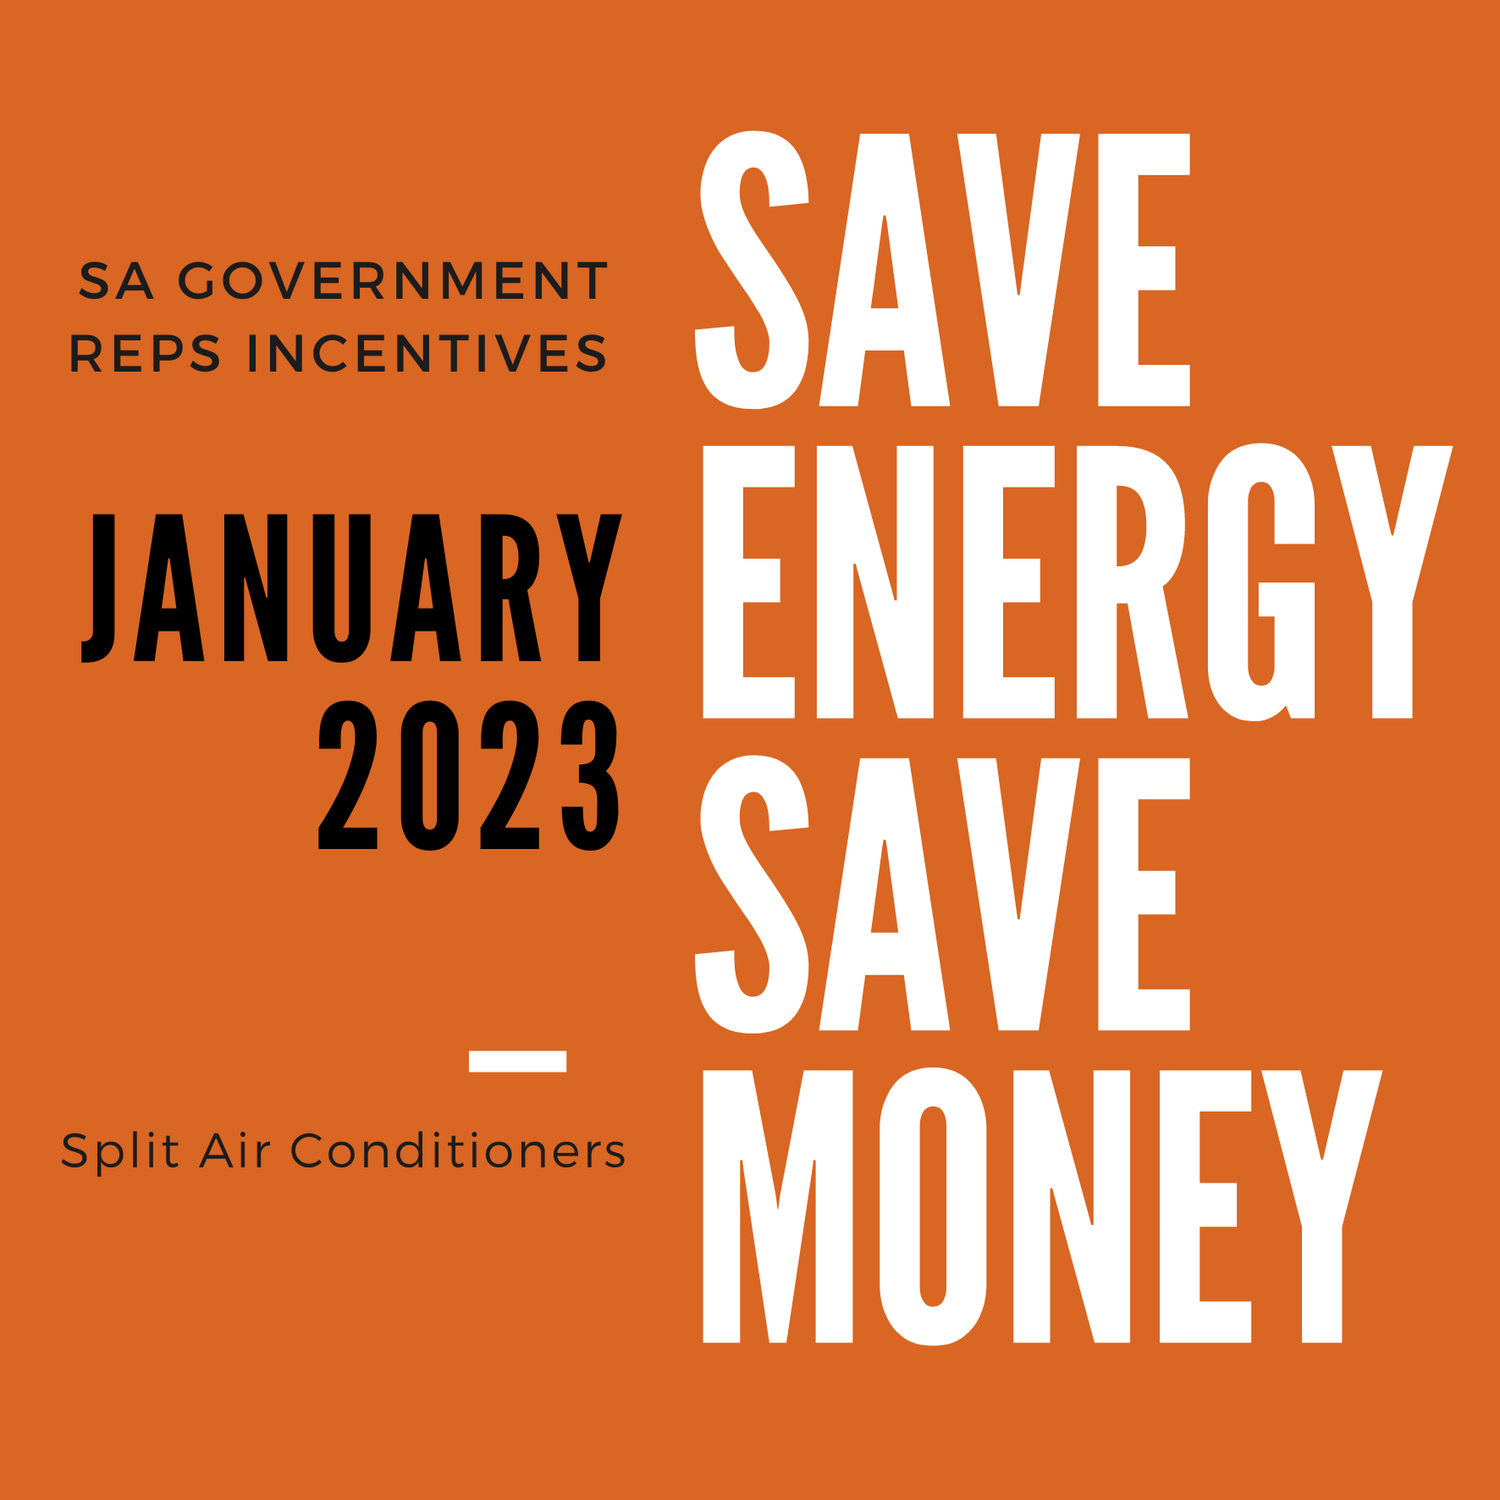 energy-loop-say-no-to-high-energy-bill-2023-sa-government-rebate-on